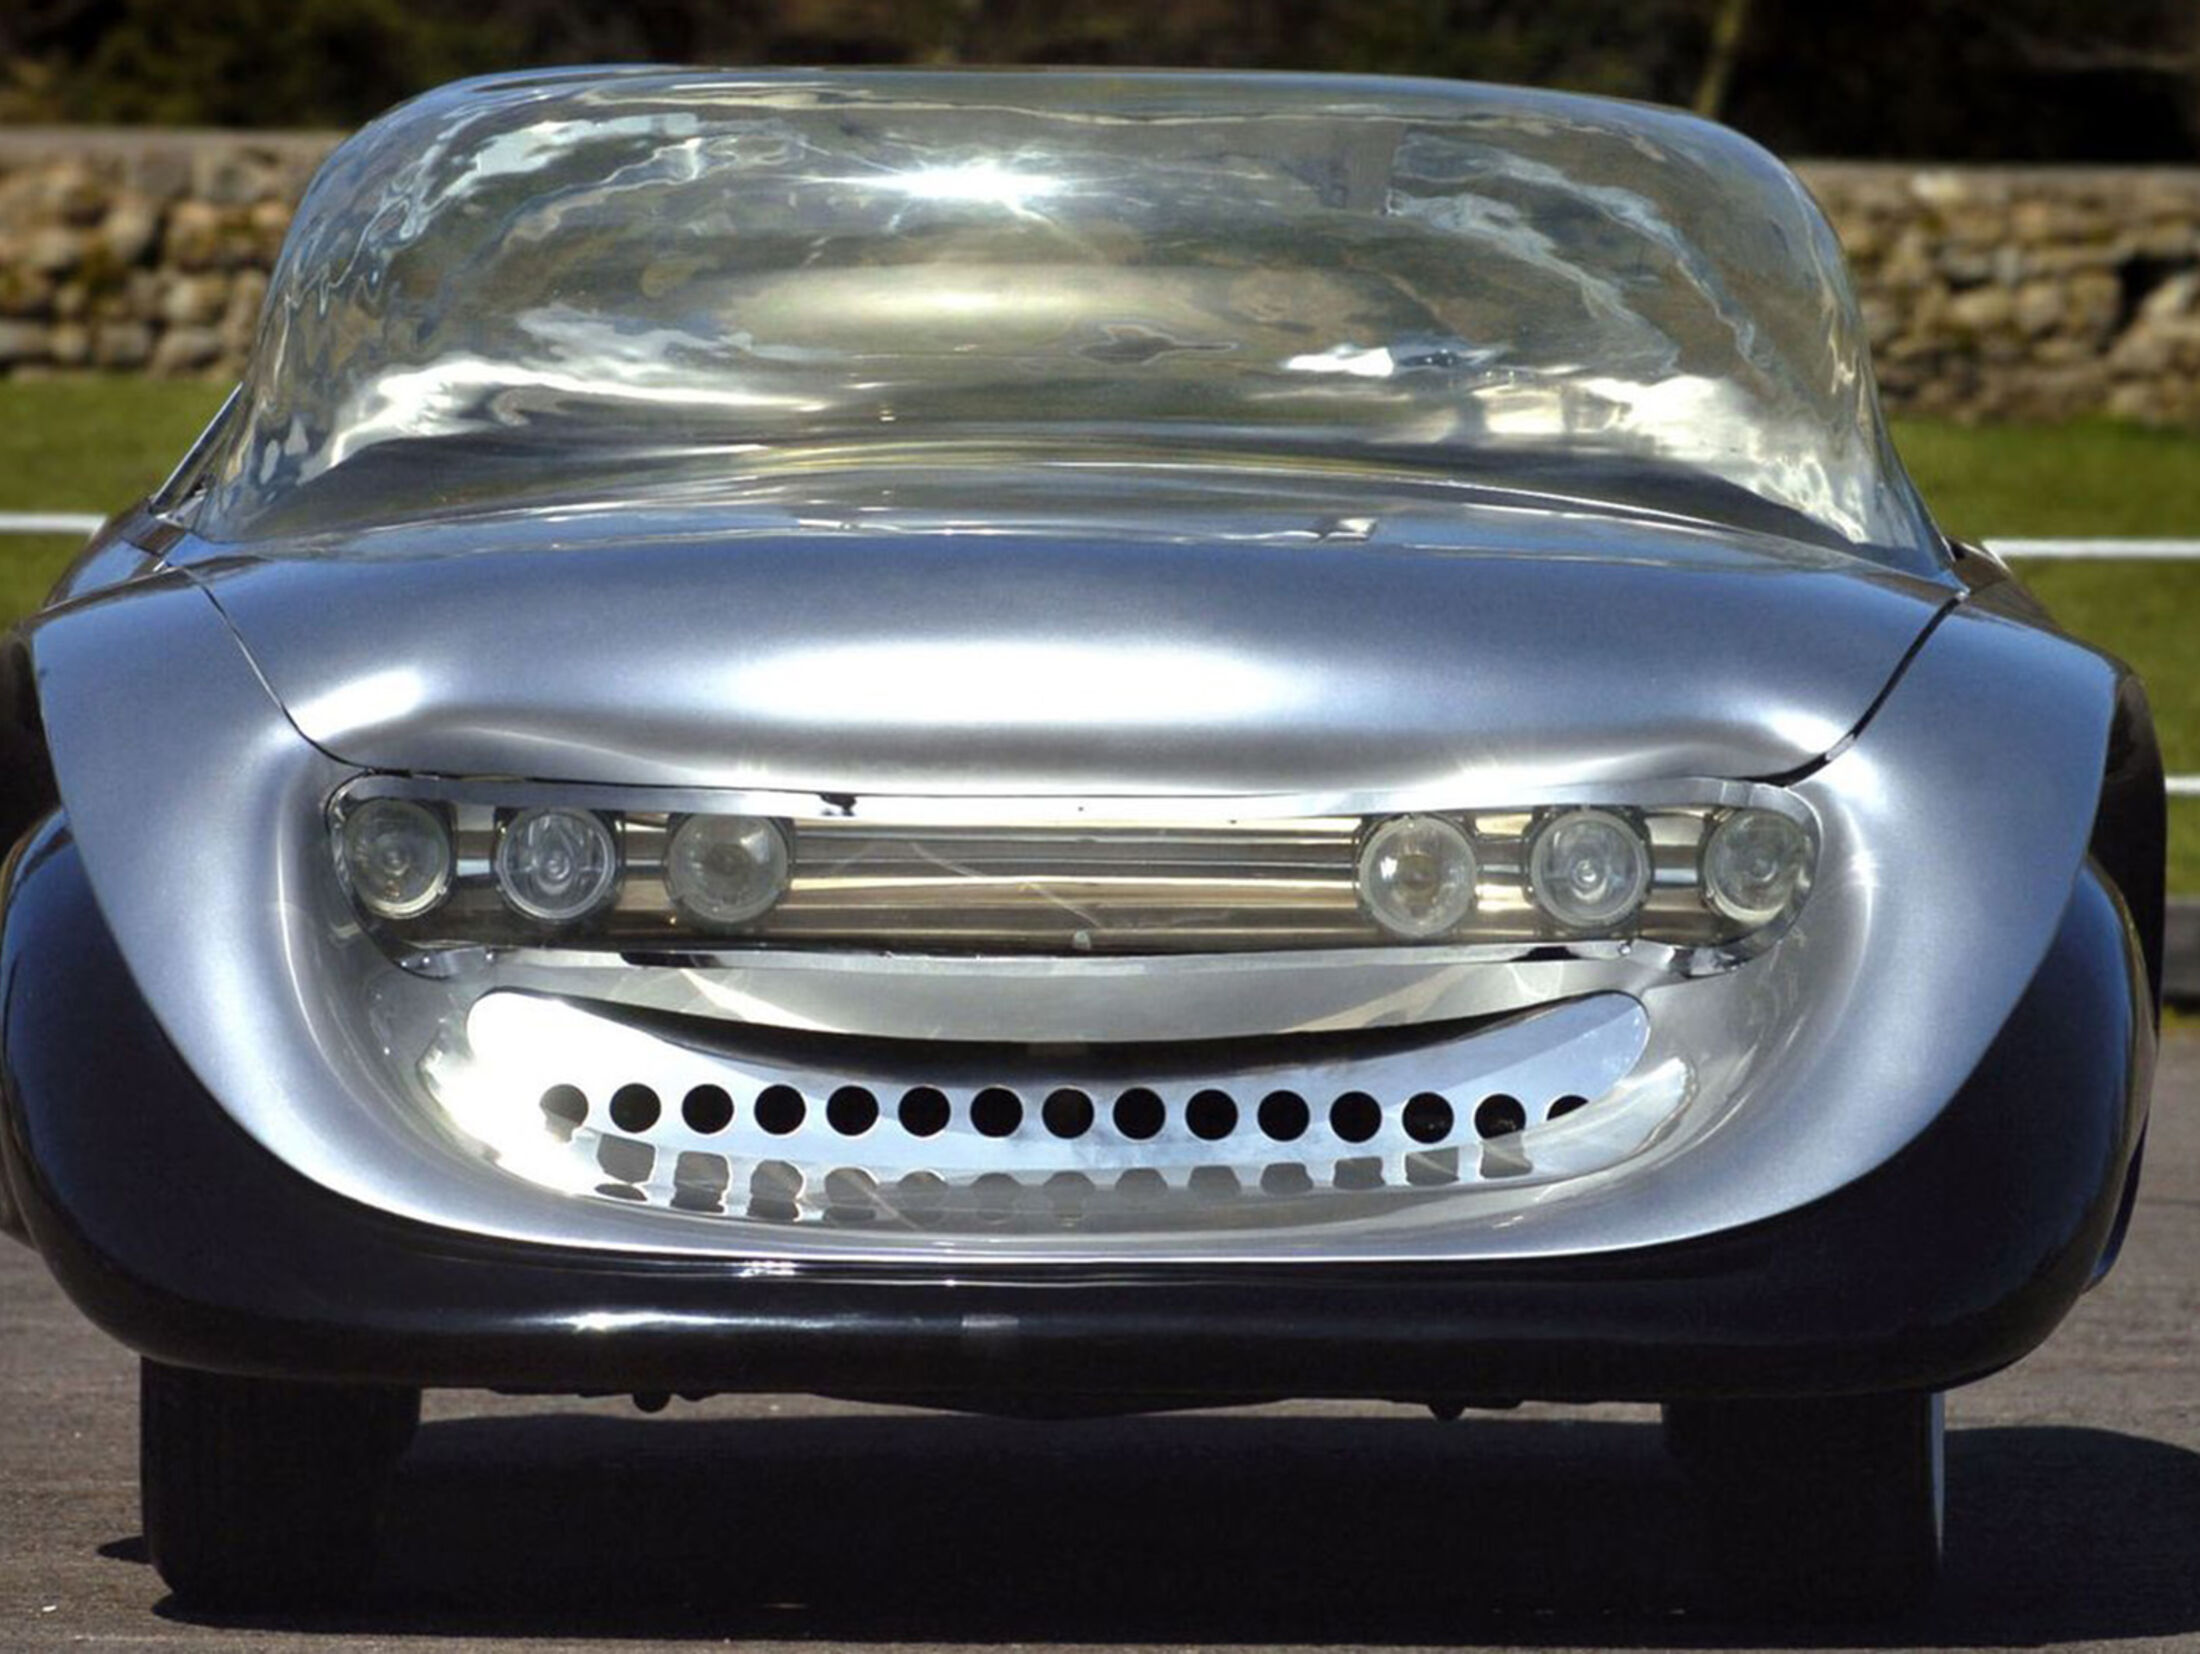 Aurora Motor Company: Mit Sicherheit das hässlichste Auto der Welt